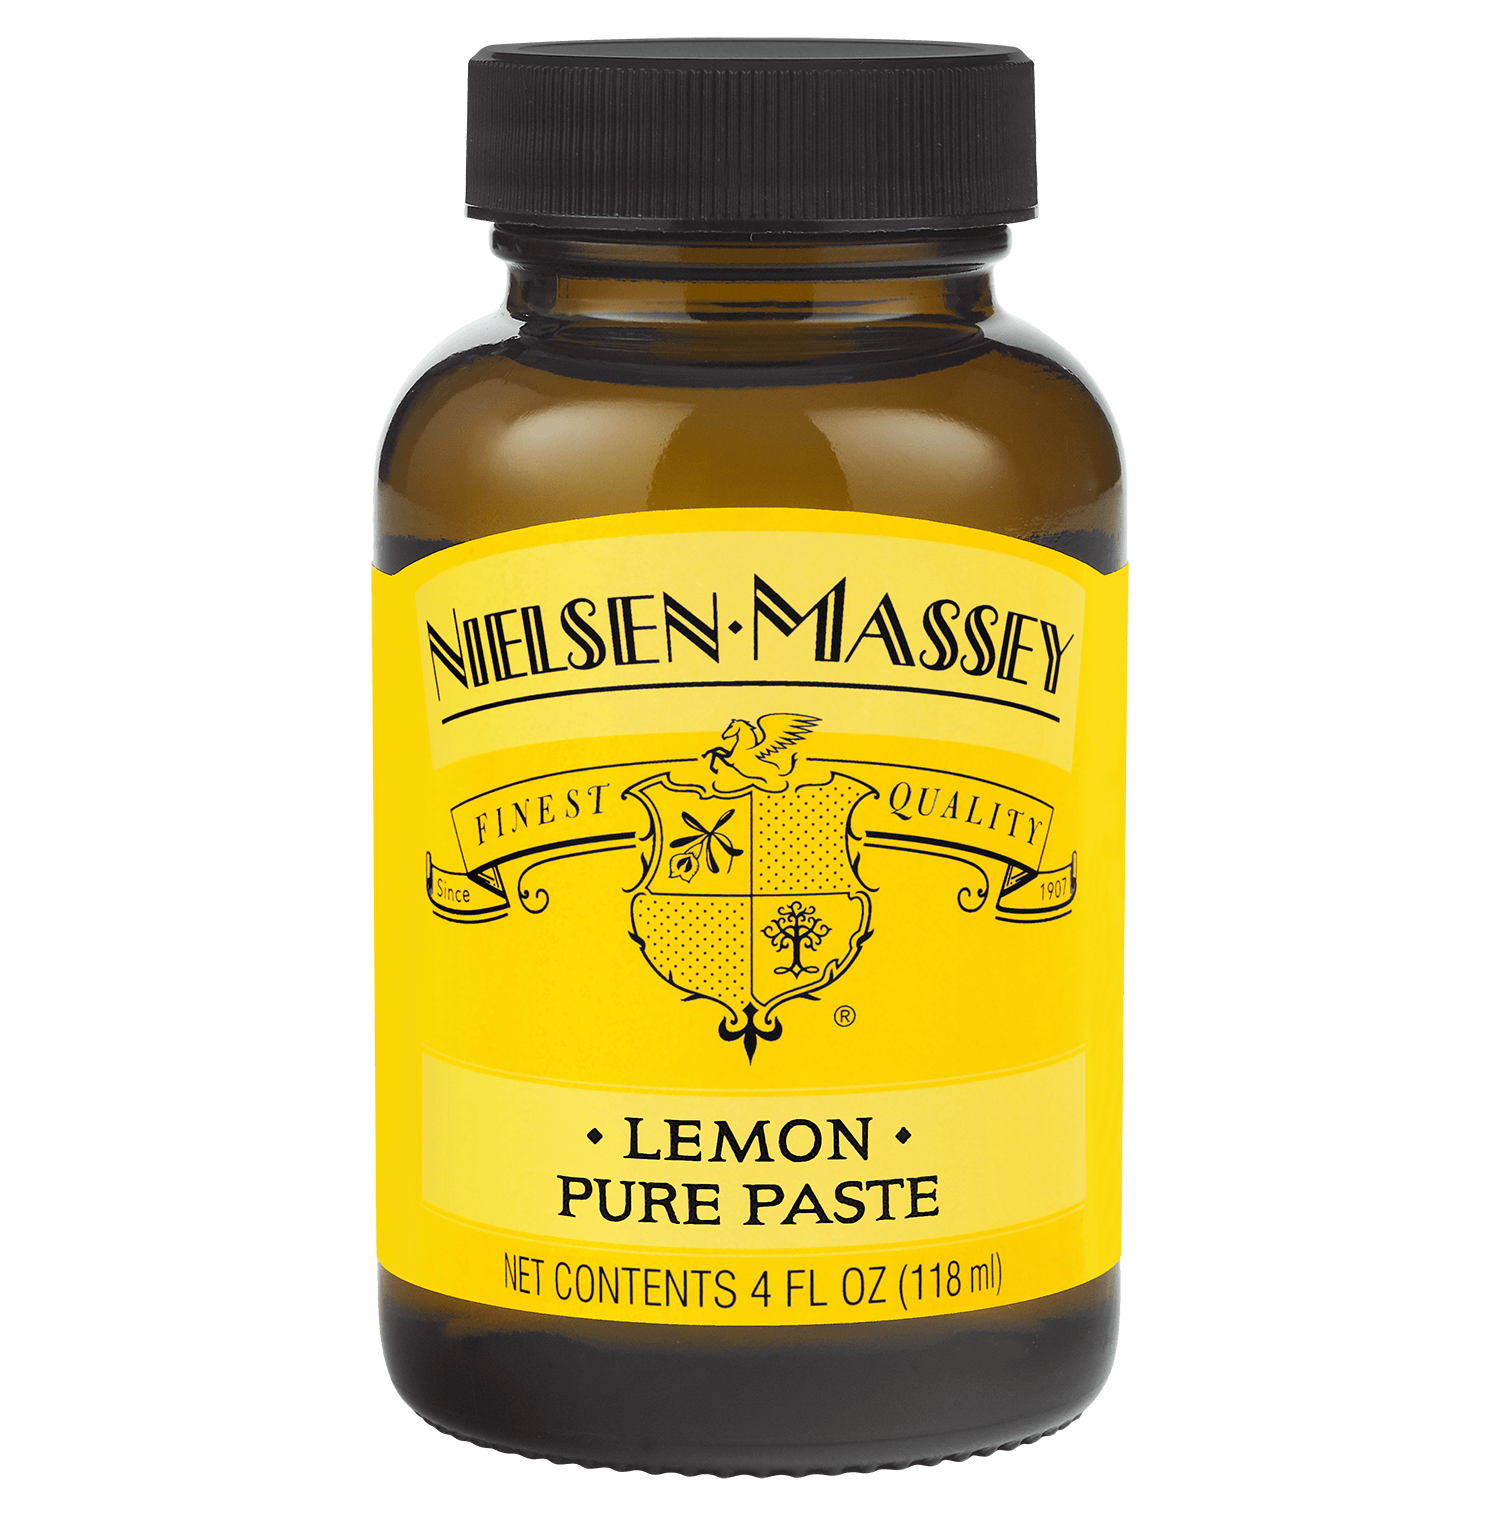 Nielsen-Massey - Pure Lemon Paste